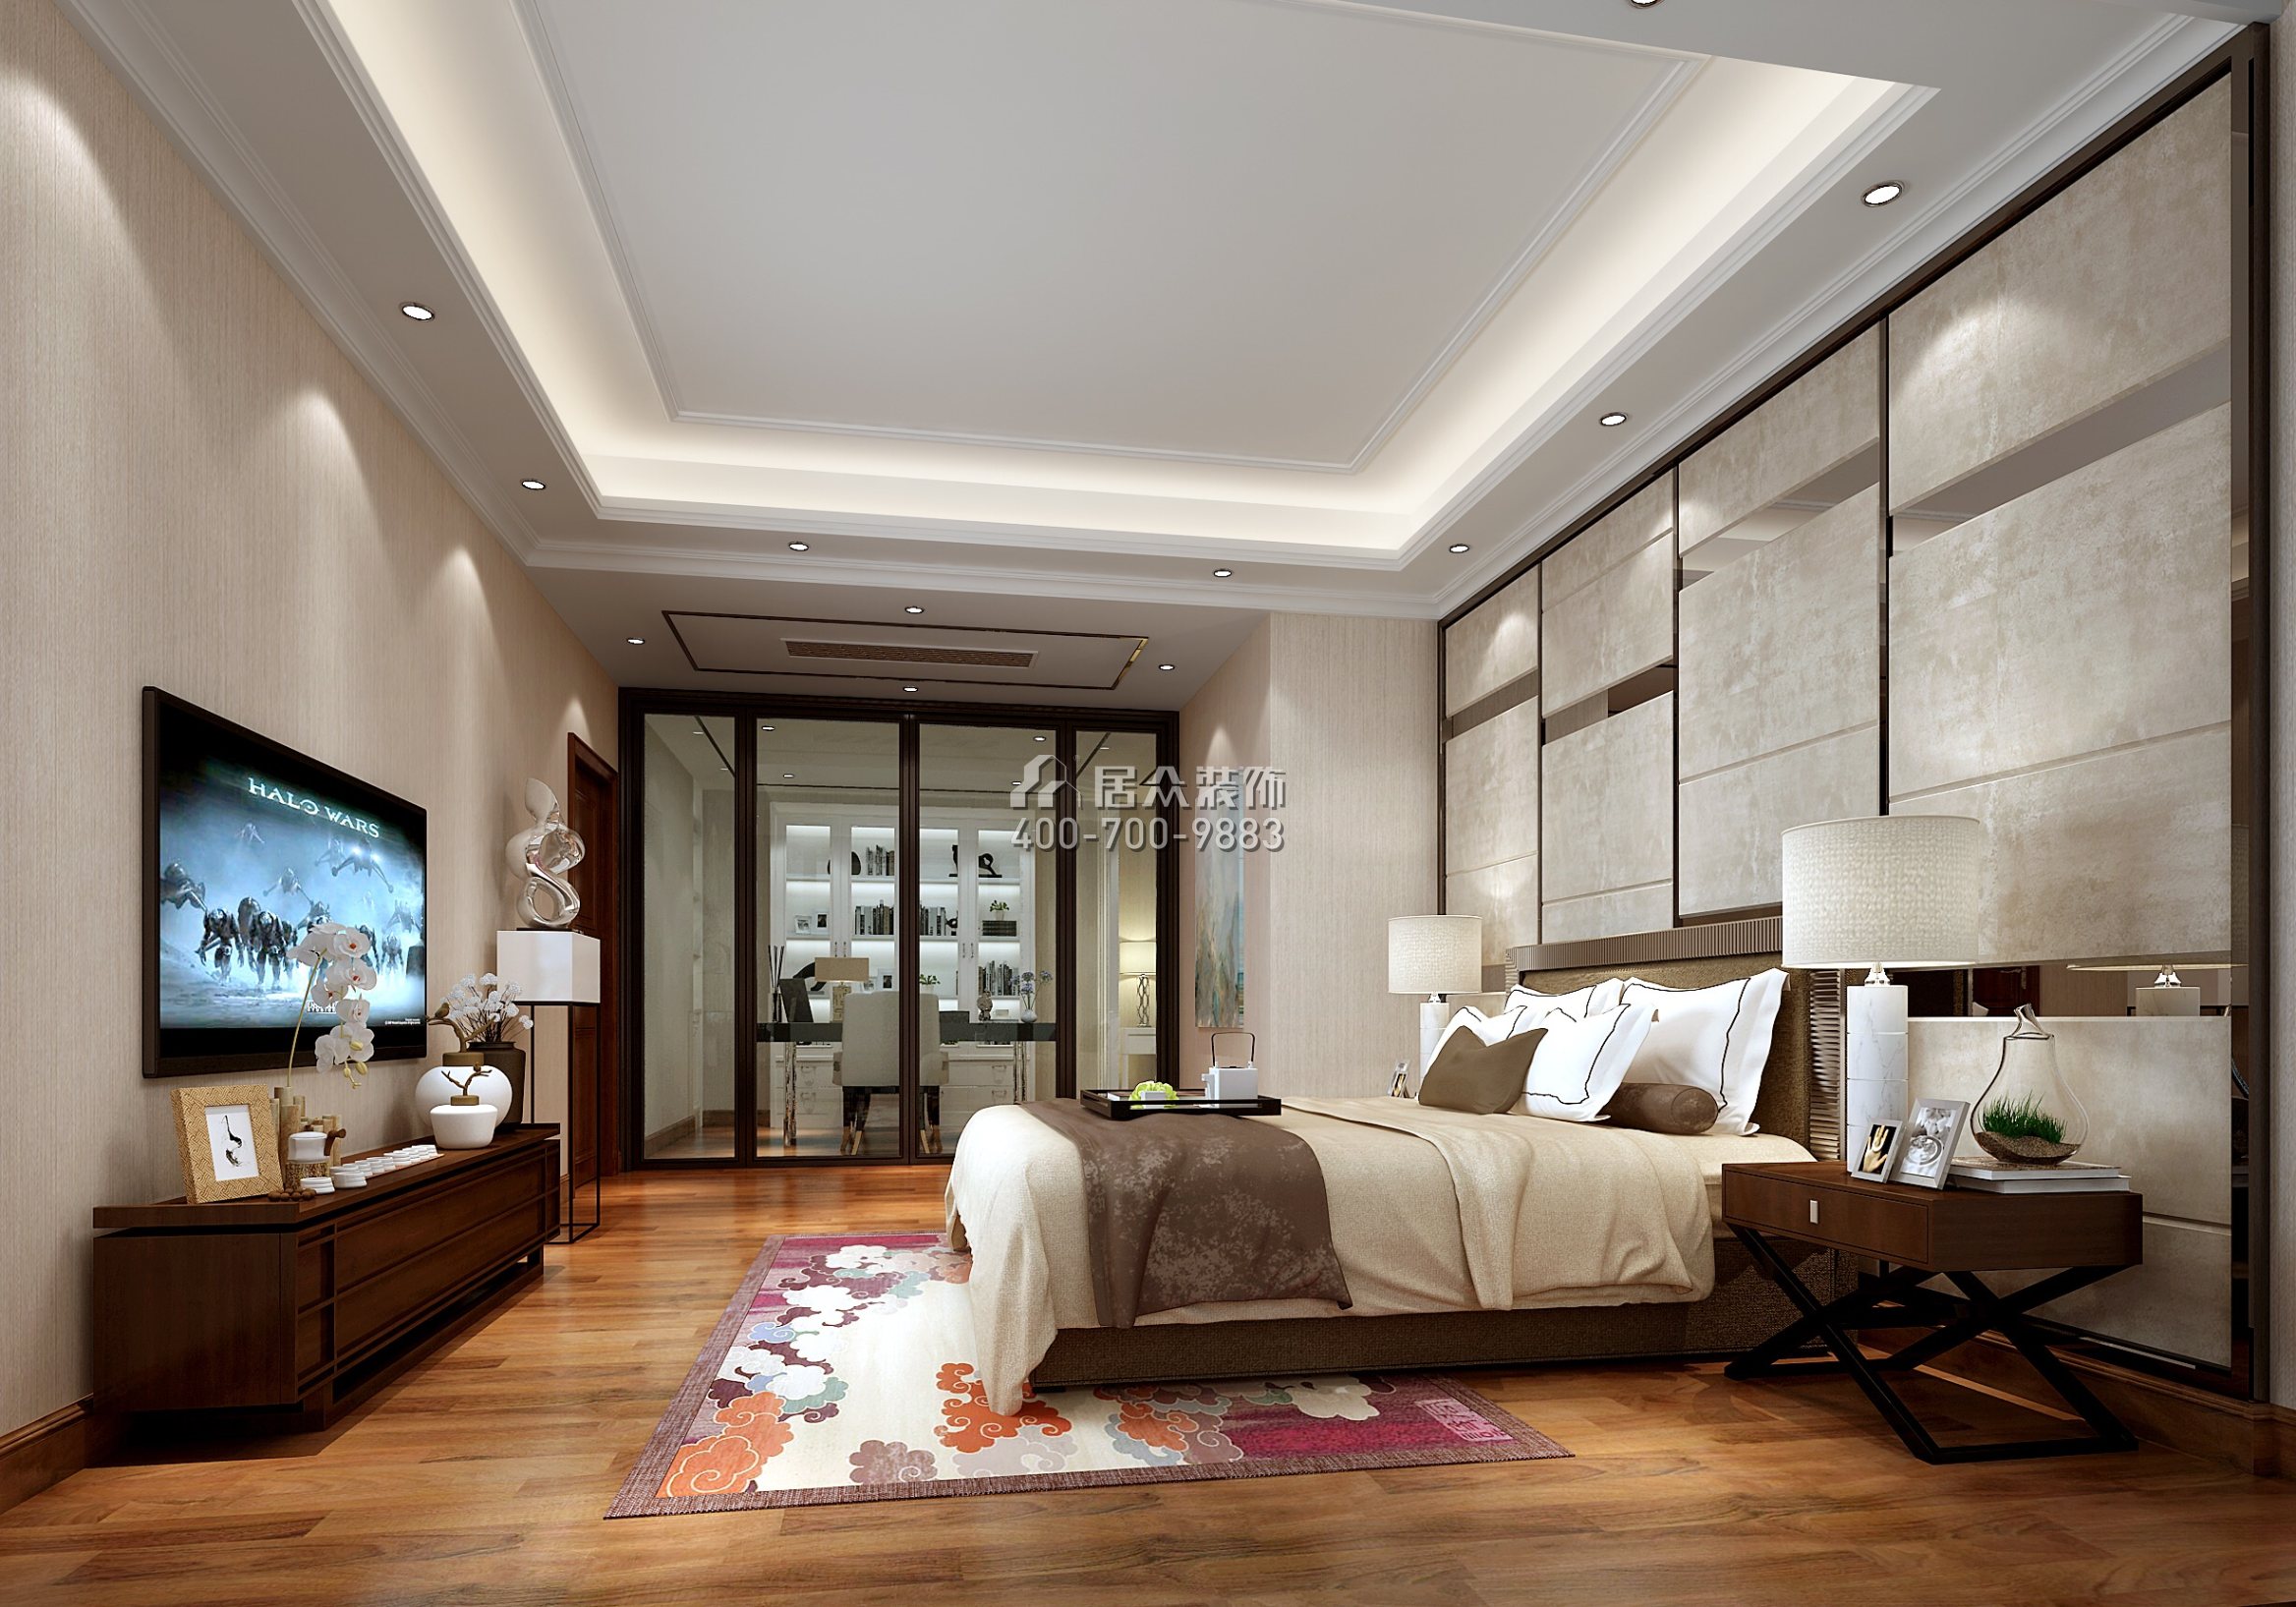 中洲中央公园二期210平方米混搭风格复式户型卧室装修效果图